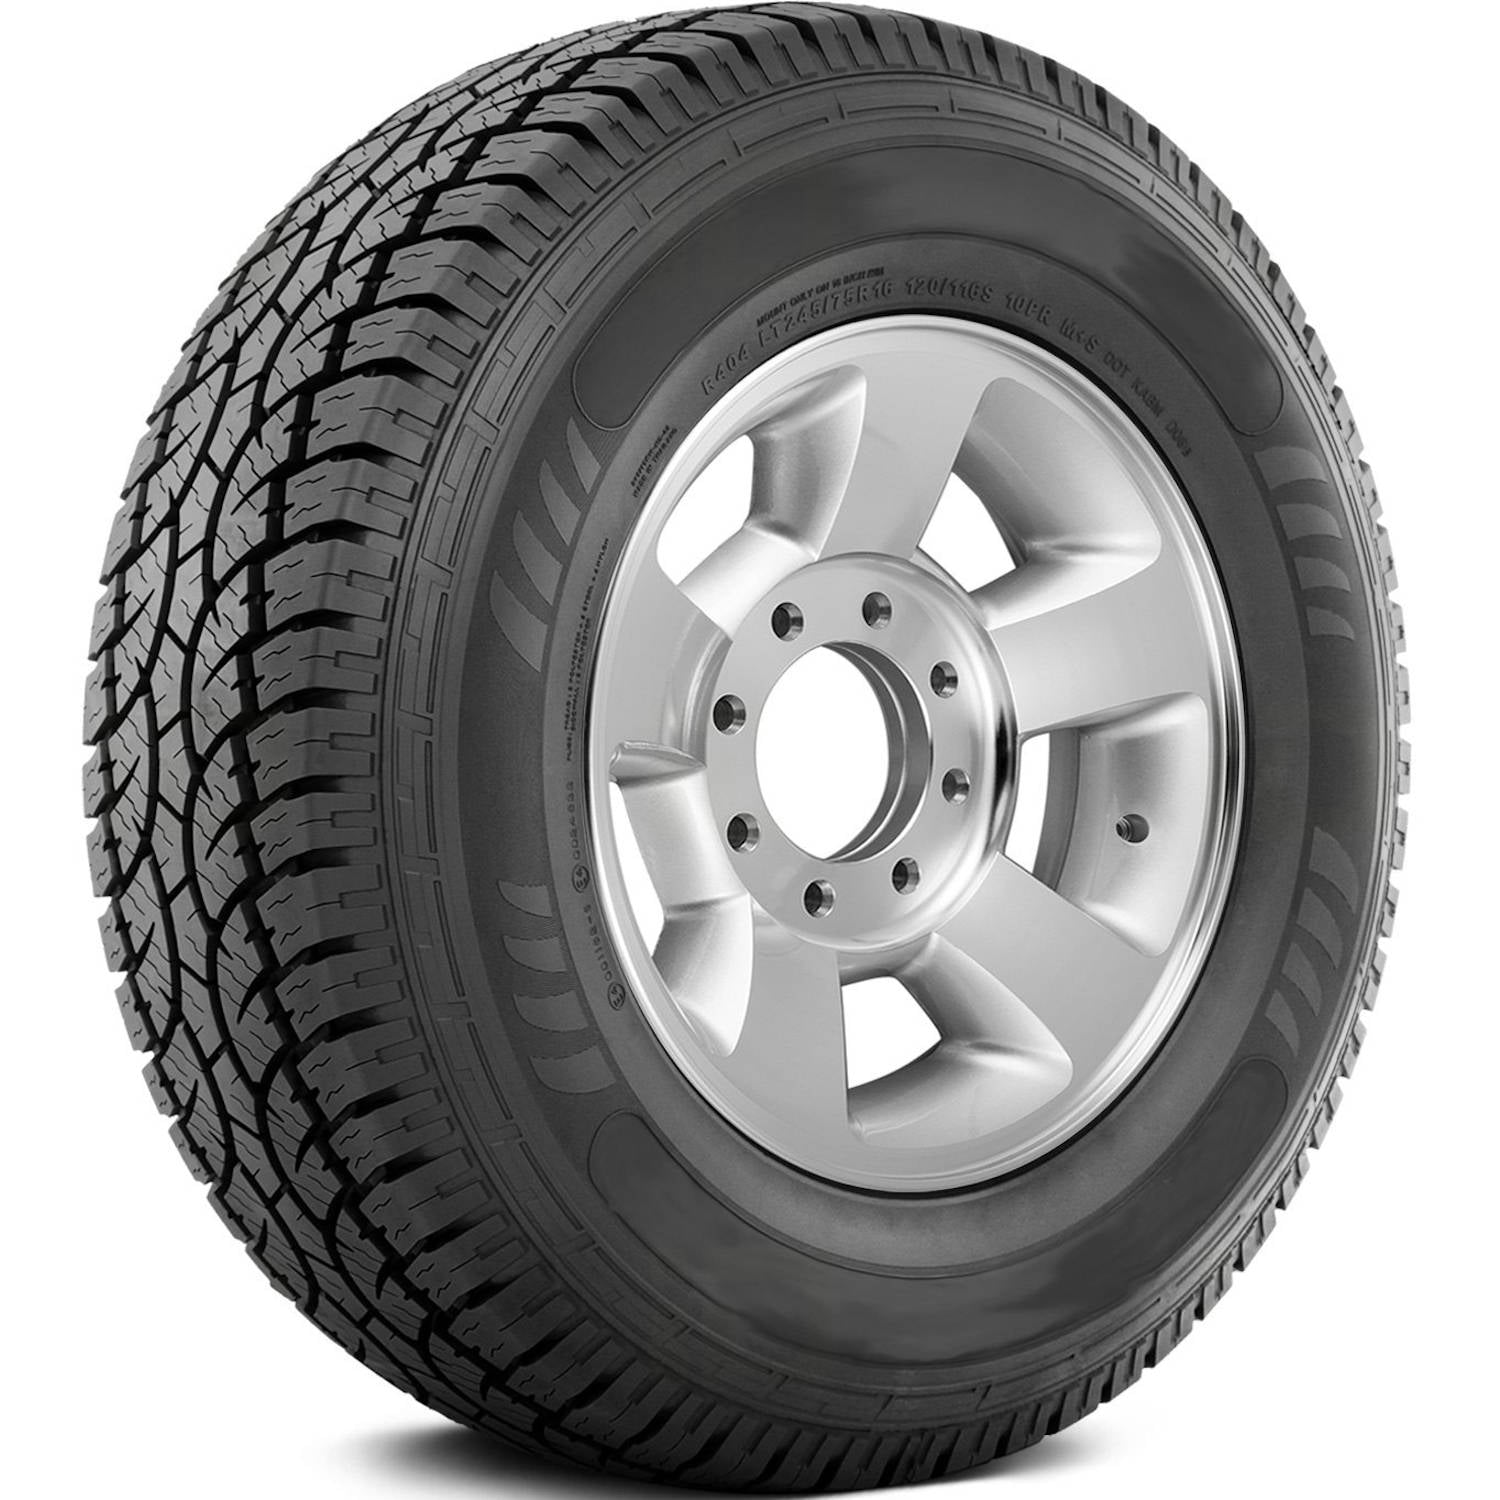 AMERICUS RUGGED ALL TERRAIN 275/55R20 XL (31.9X10.8R 20) Tires